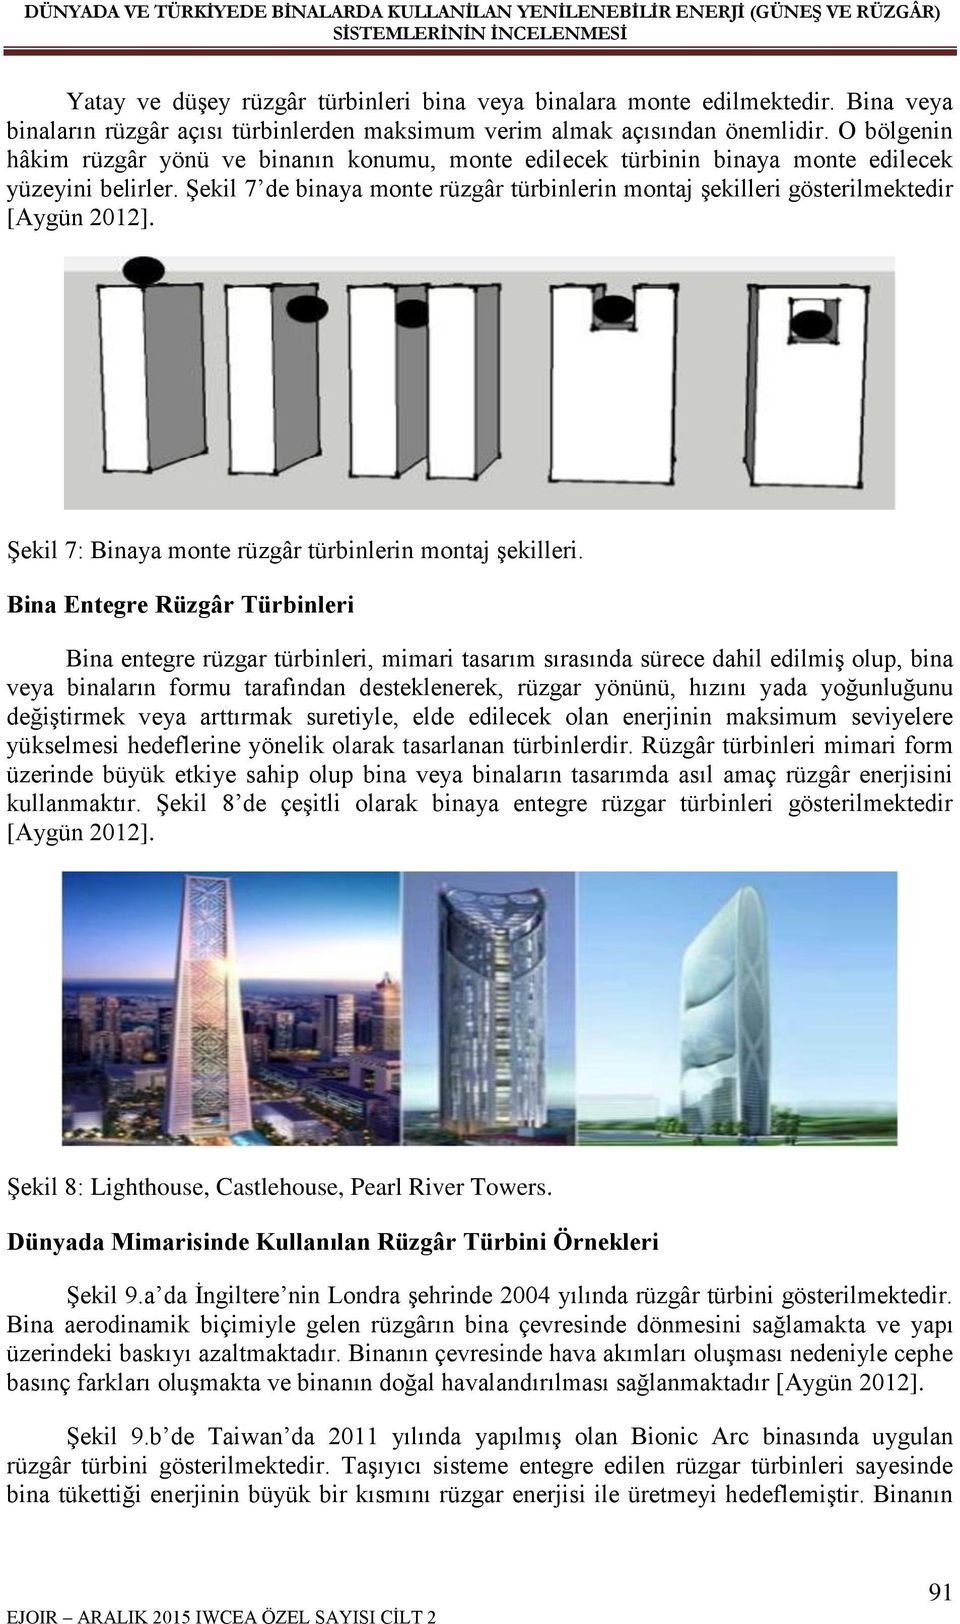 Şekil 7 de binaya monte rüzgâr türbinlerin montaj şekilleri gösterilmektedir [Aygün 2012]. Şekil 7: Binaya monte rüzgâr türbinlerin montaj şekilleri.